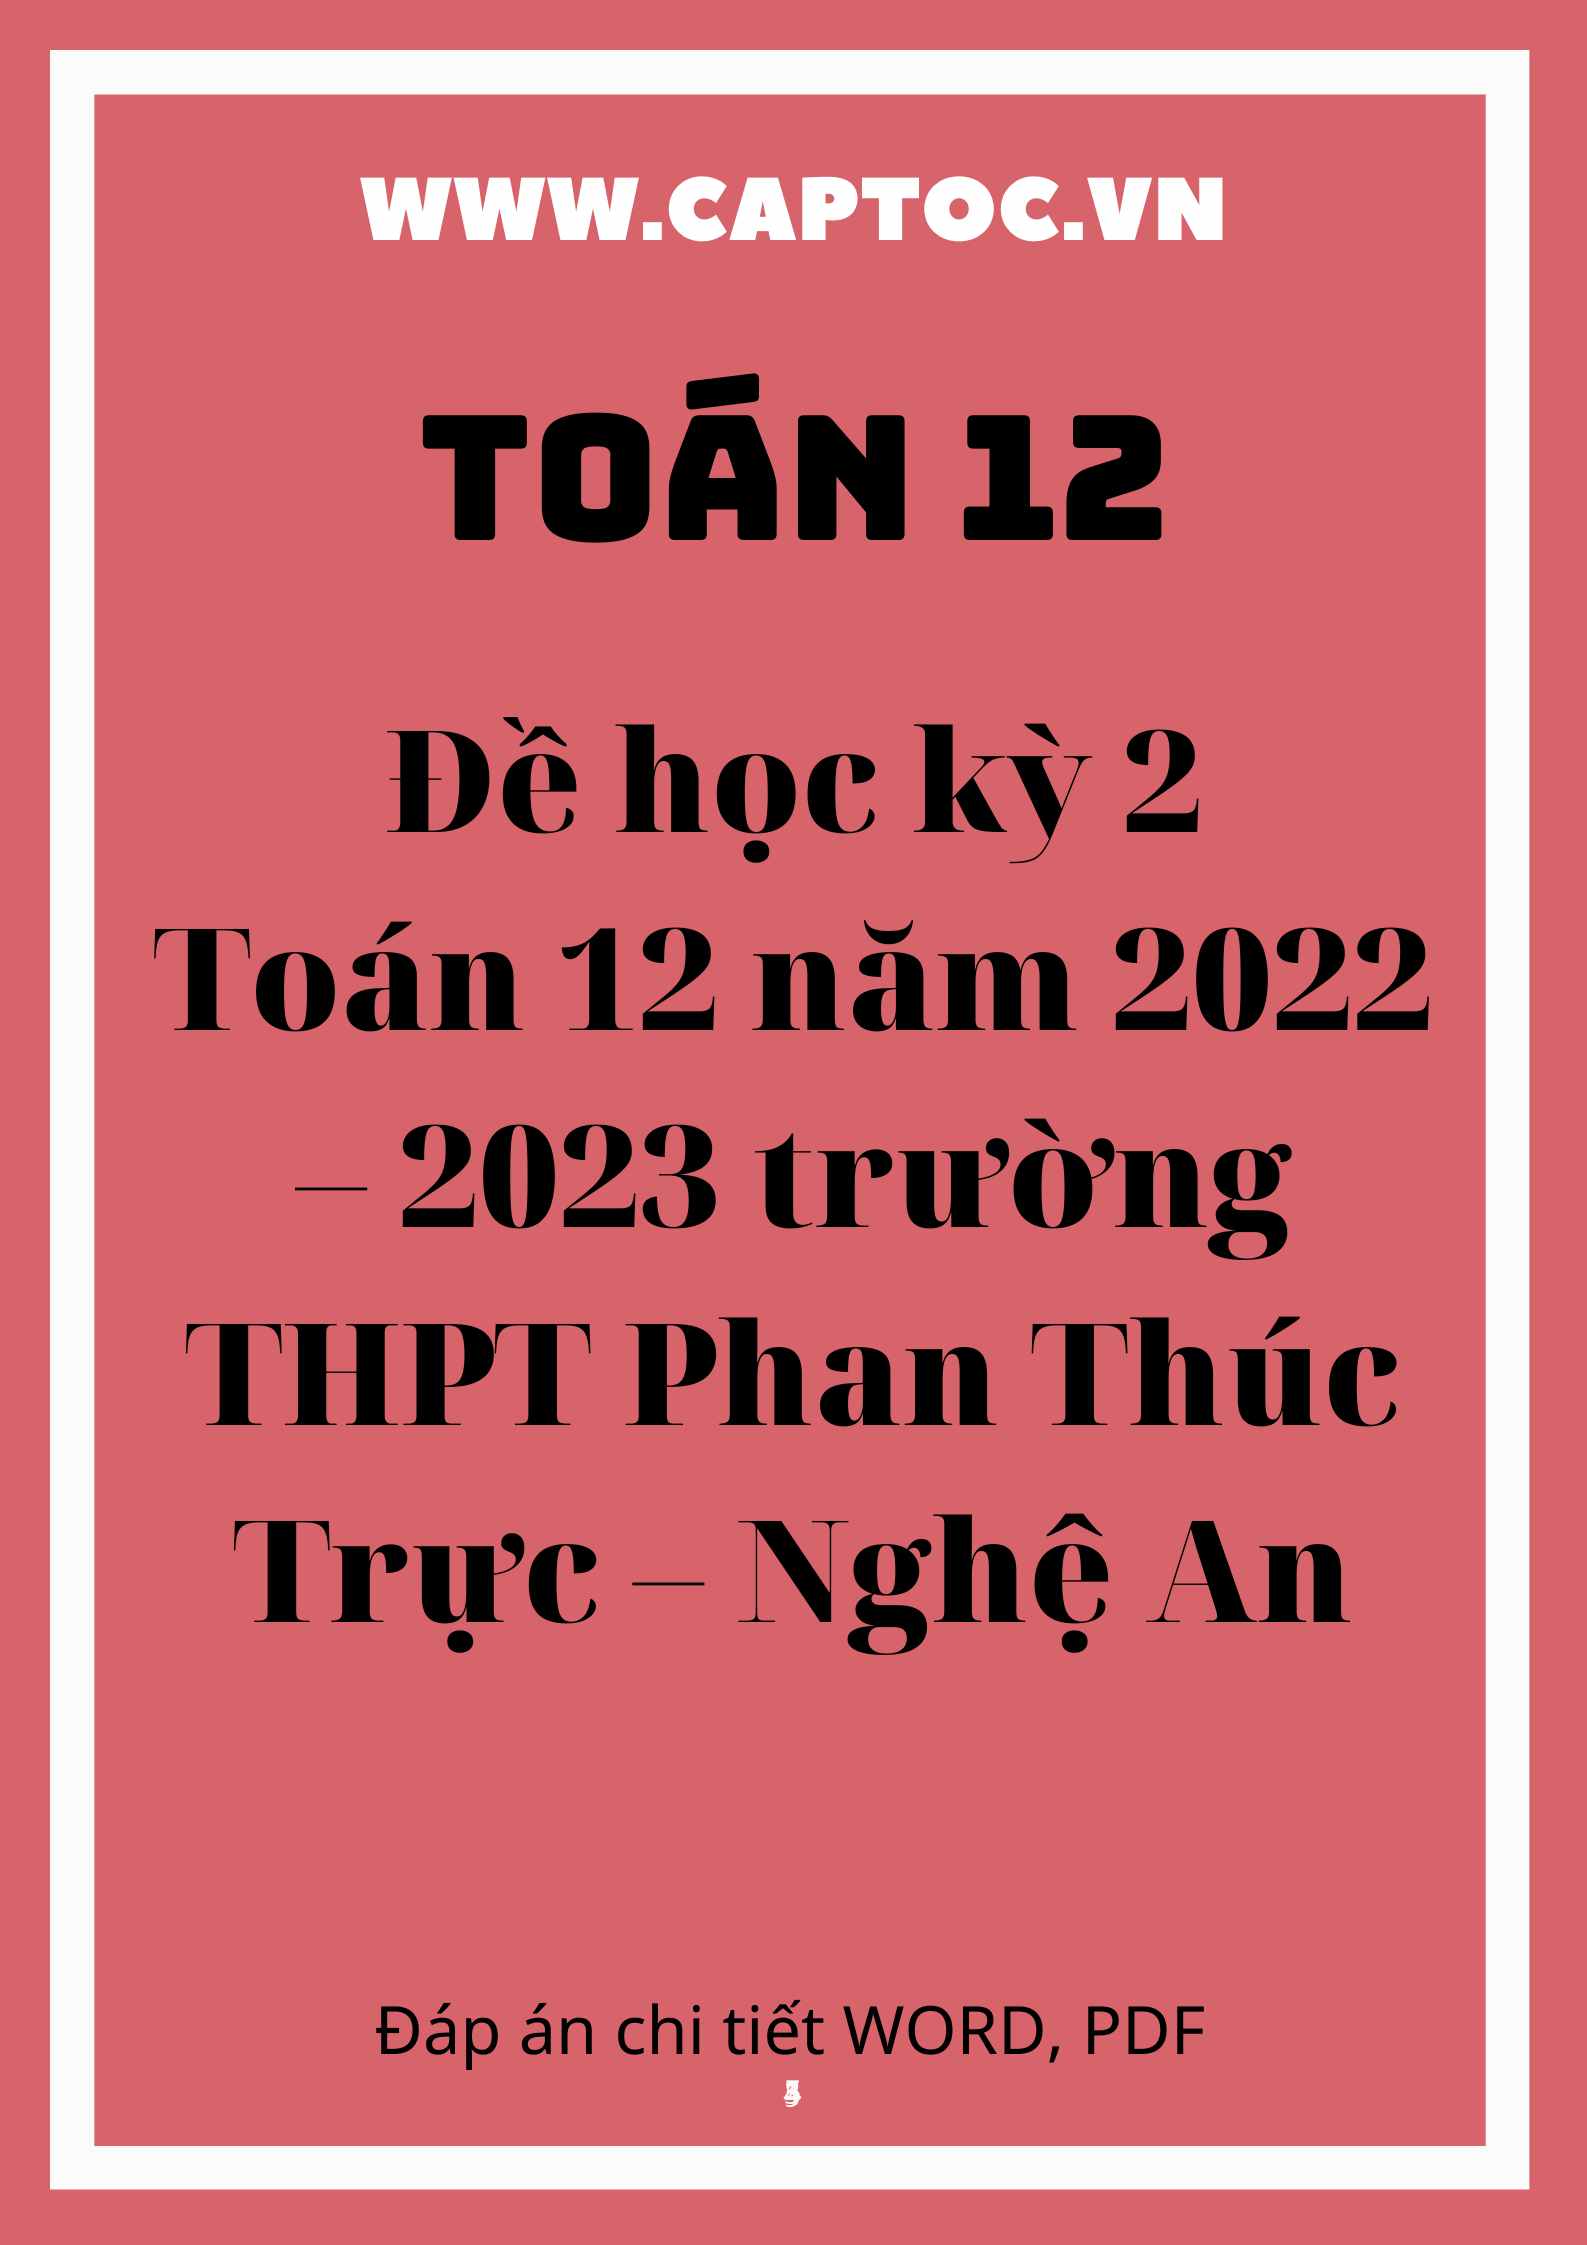 Đề học kỳ 2 Toán 12 năm 2022 – 2023 trường THPT Phan Thúc Trực – Nghệ An